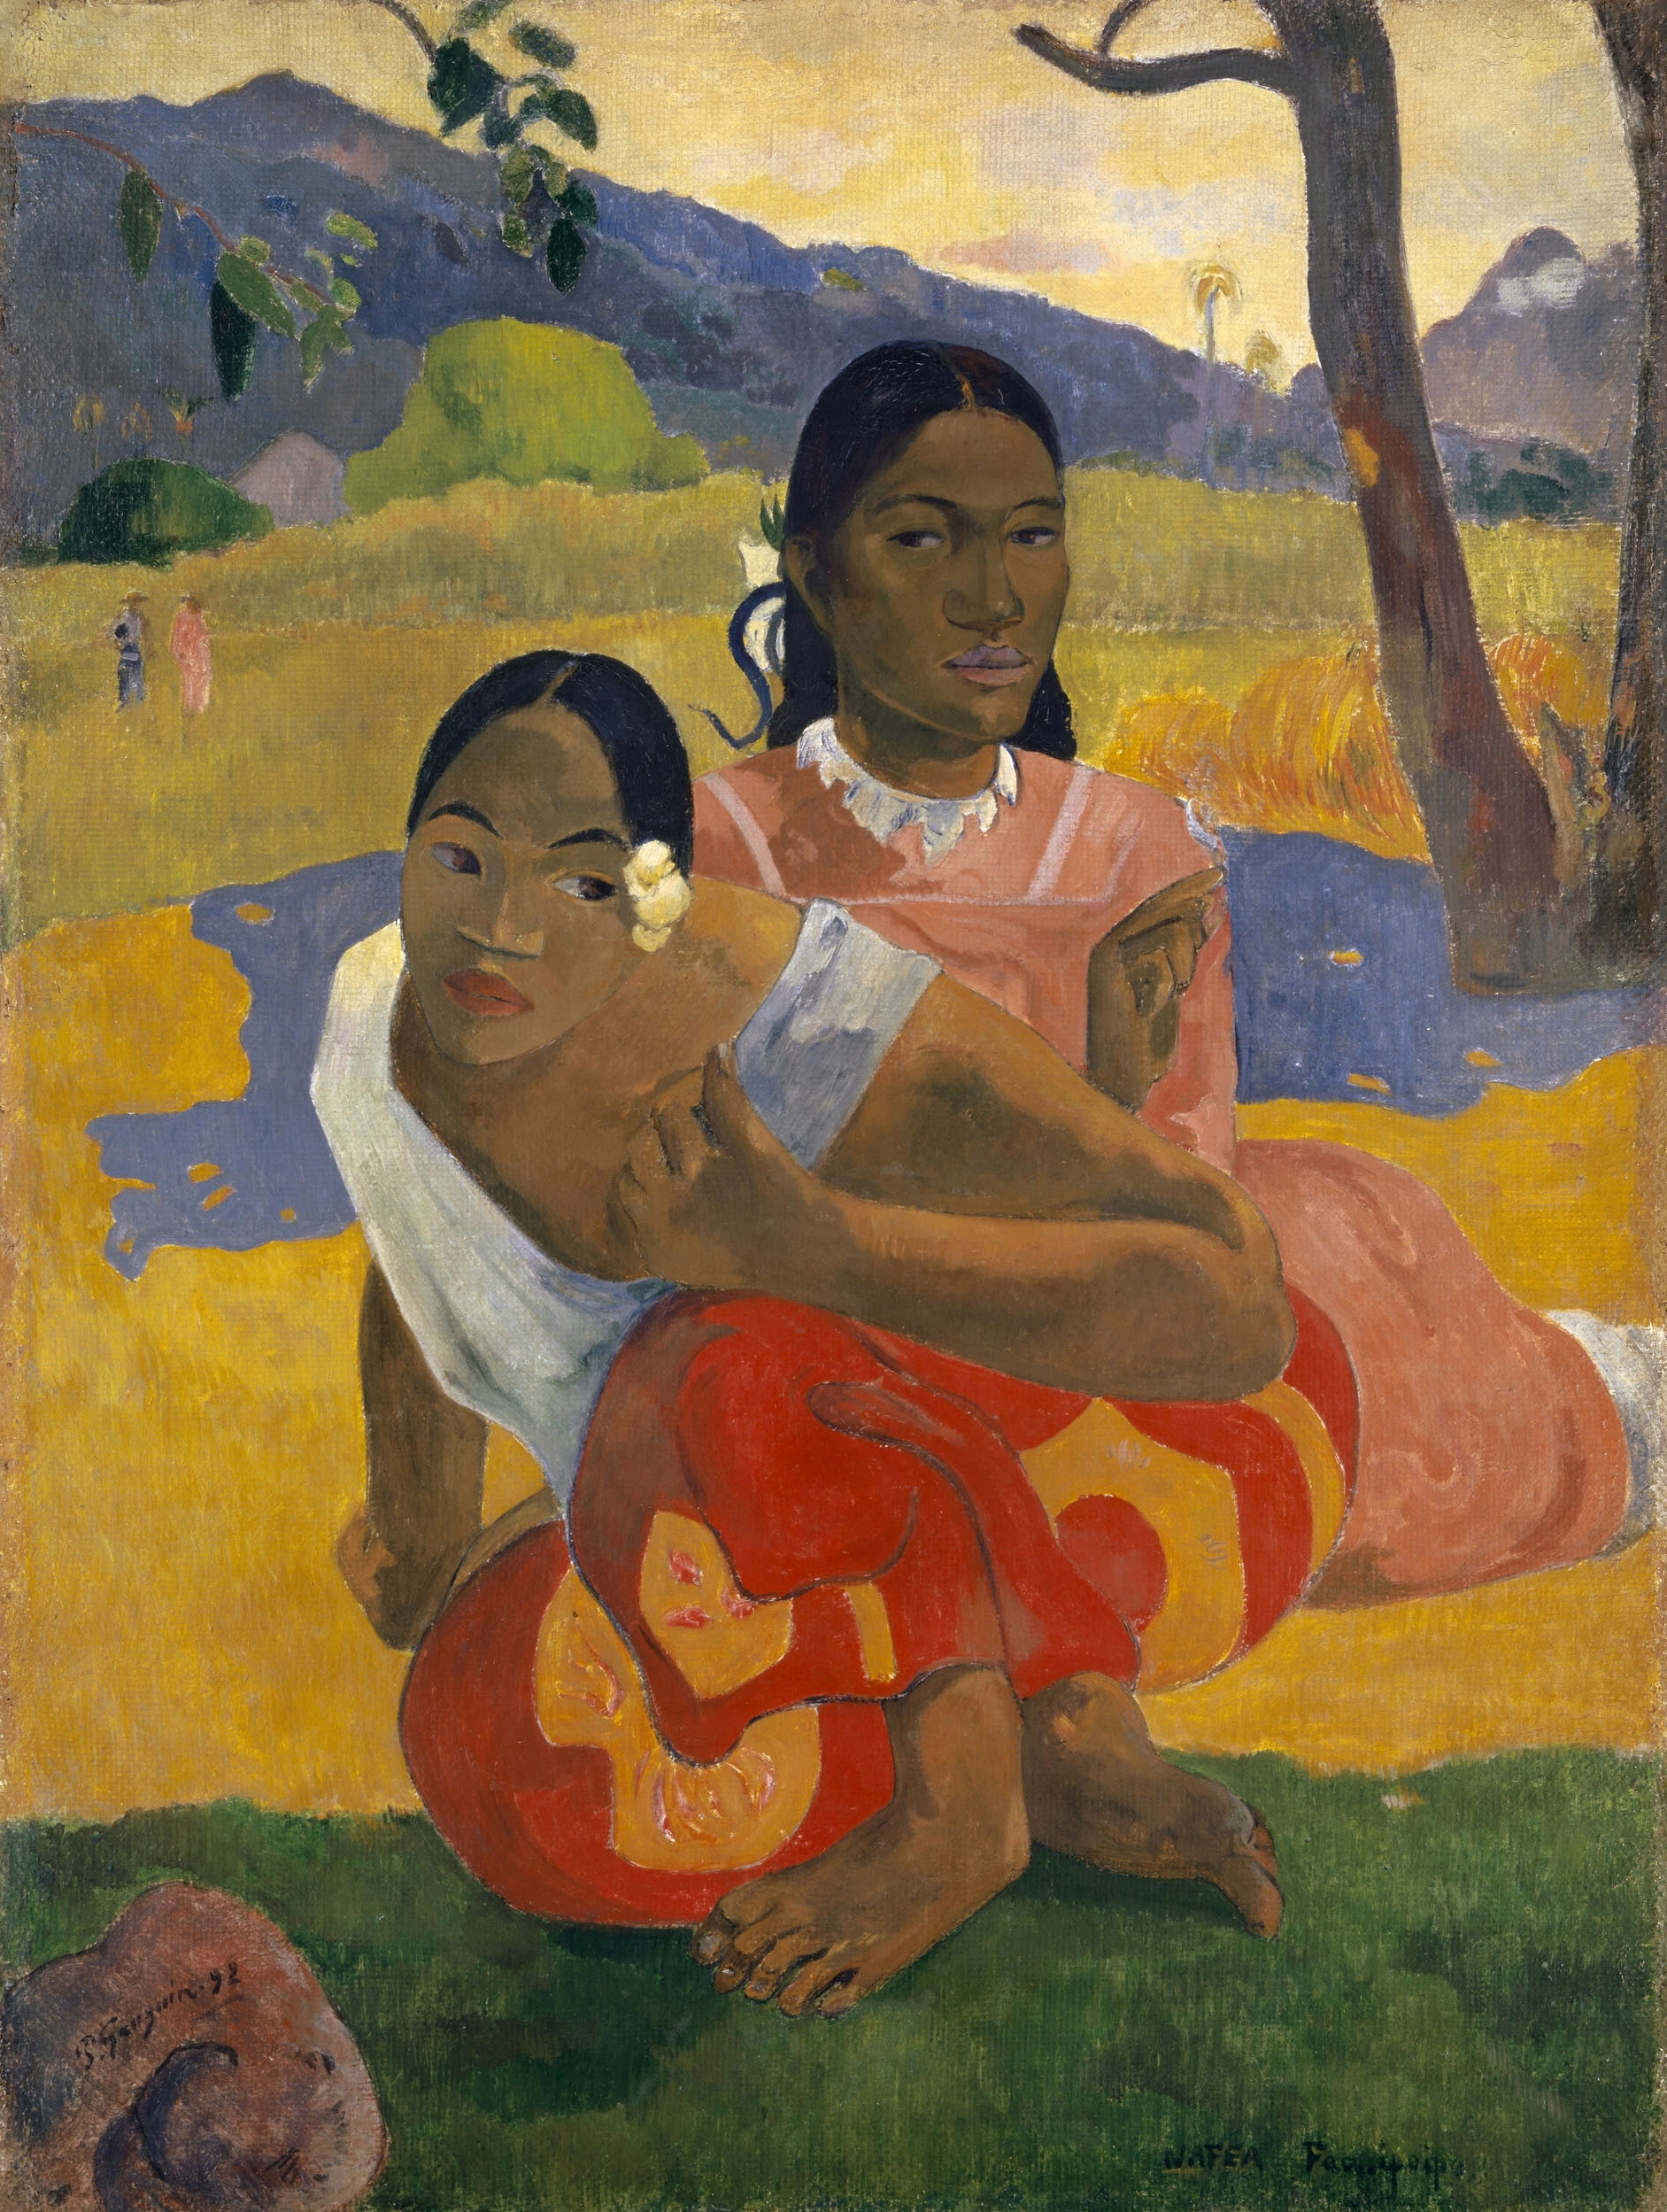 Wanneer zal je trouwen? by Paul Gauguin - 1892 - 101 x 77 cm 